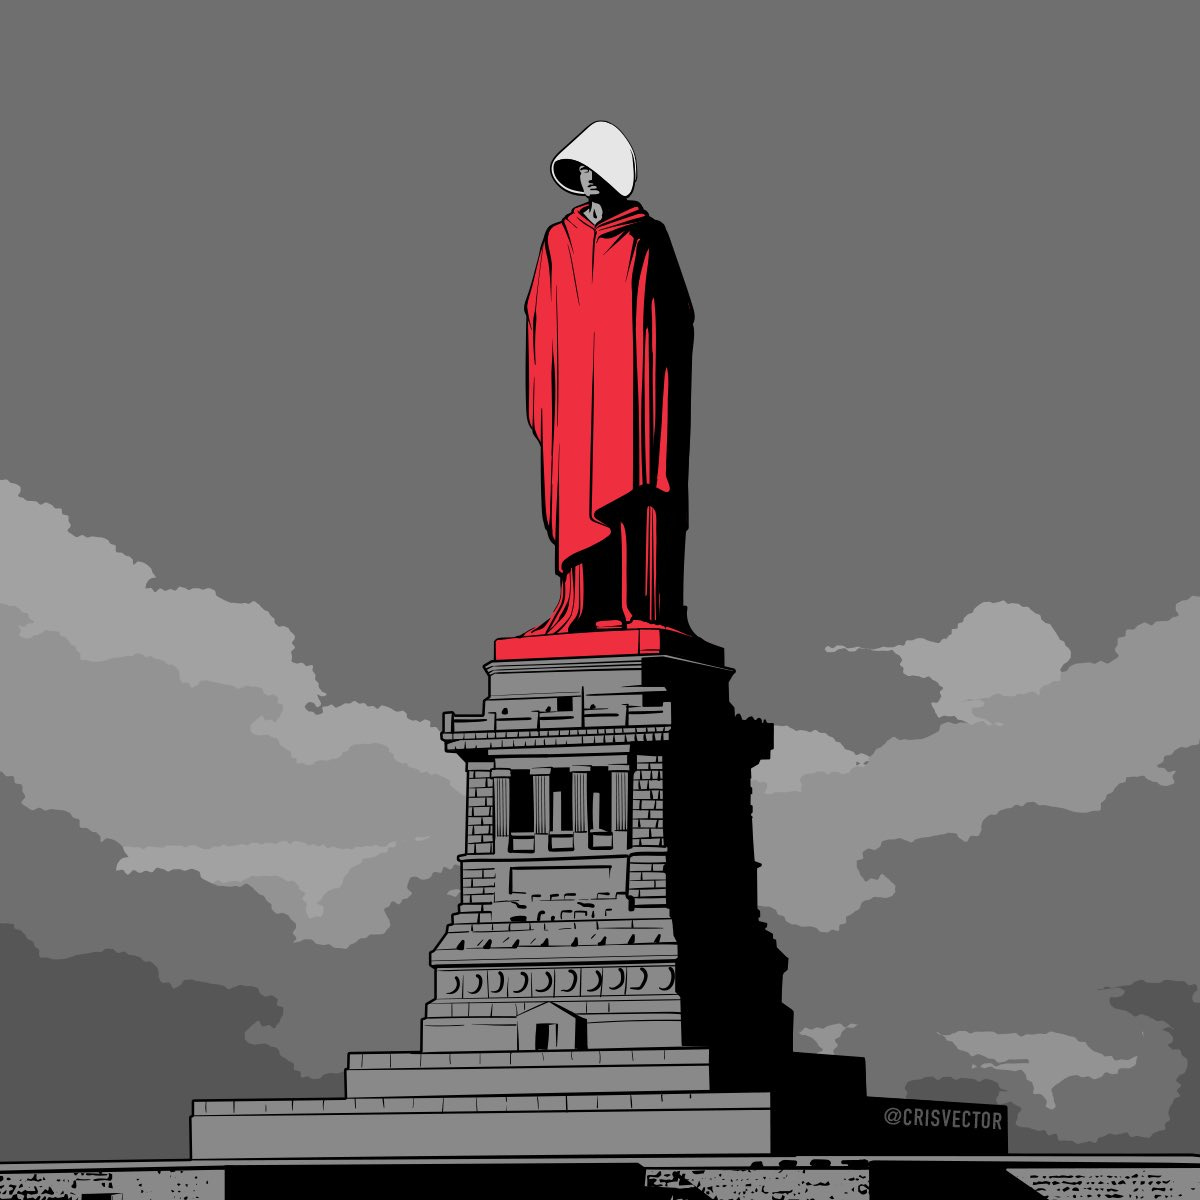 Ilustração da estátua da Liberdade caracterizada como uma personagem de “O Conto da Aia” (mulher de túnica vermelha, usando um chapéu branco com uma aba grande que cobre seu rosto). O pedestal da estátua é cinza, o céu também é cinza com nuvens cinzas.